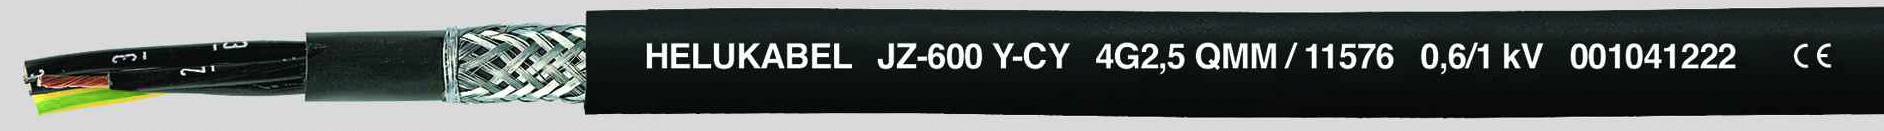 HELUKABEL JZ-600-Y-CY Steuerleitung 3 G 2.50 mm² Schwarz 11575-1000 1000 m